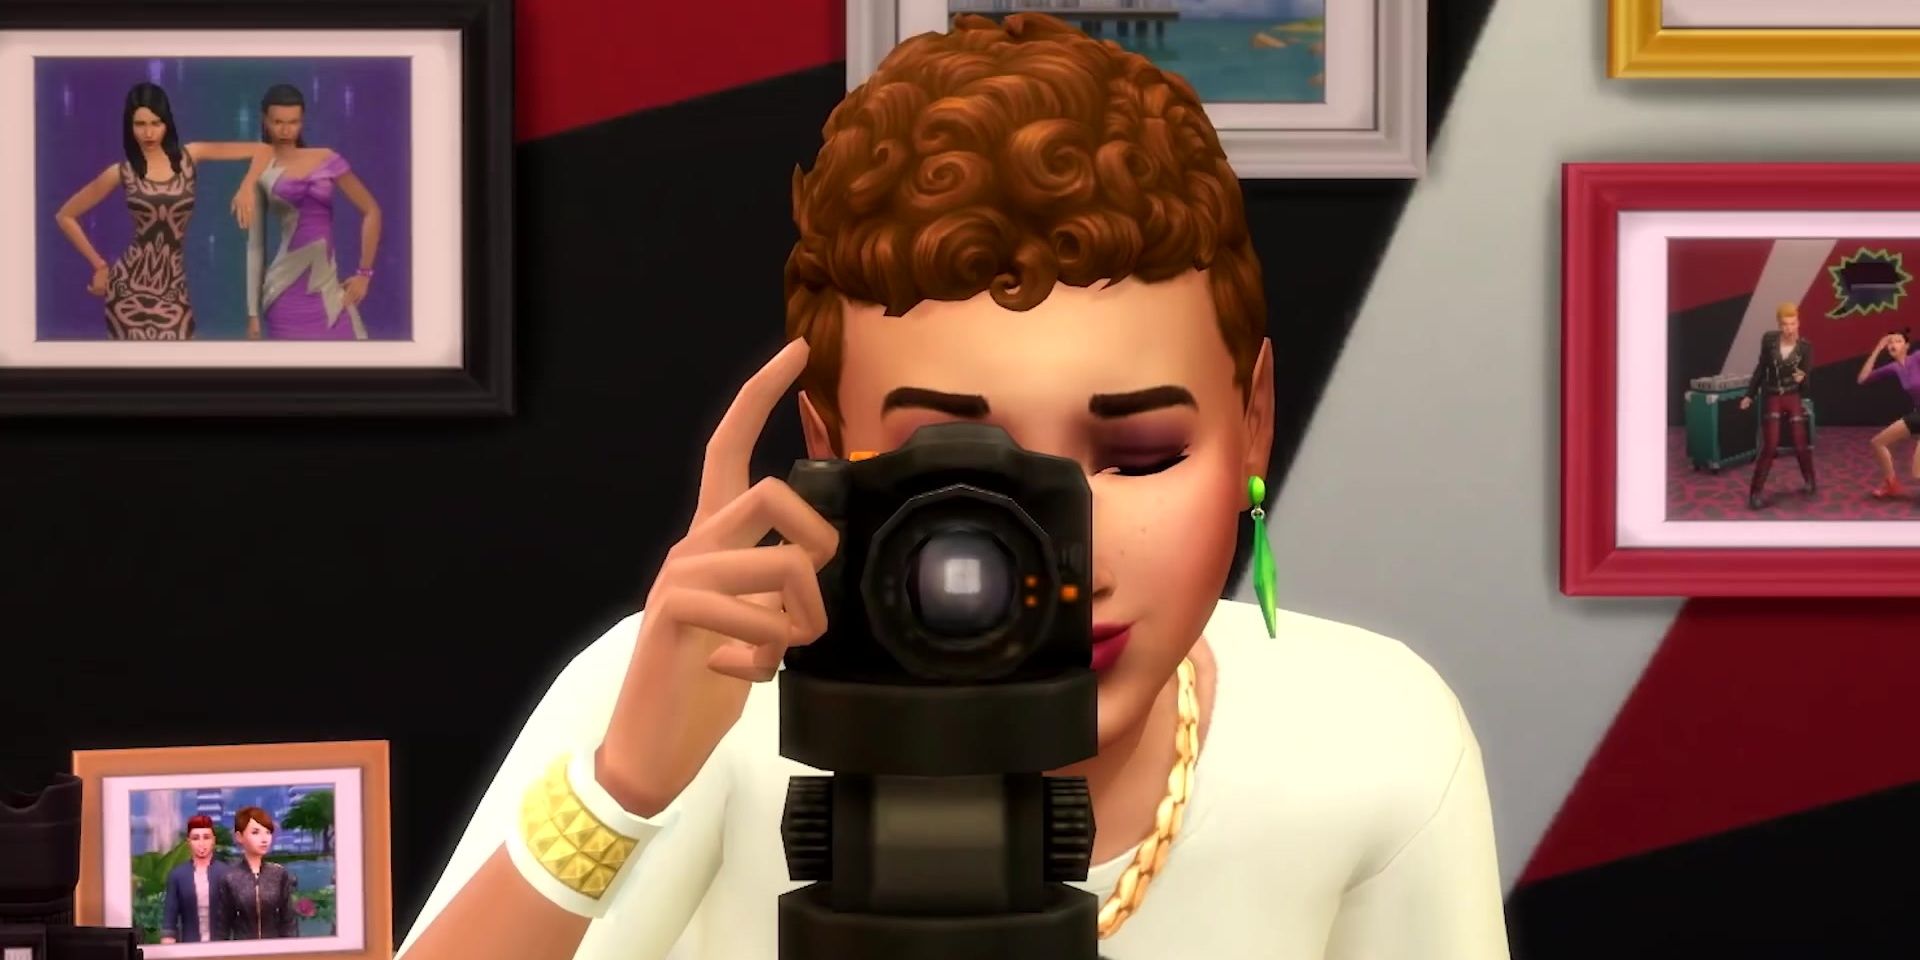 Sims 4 taking photos